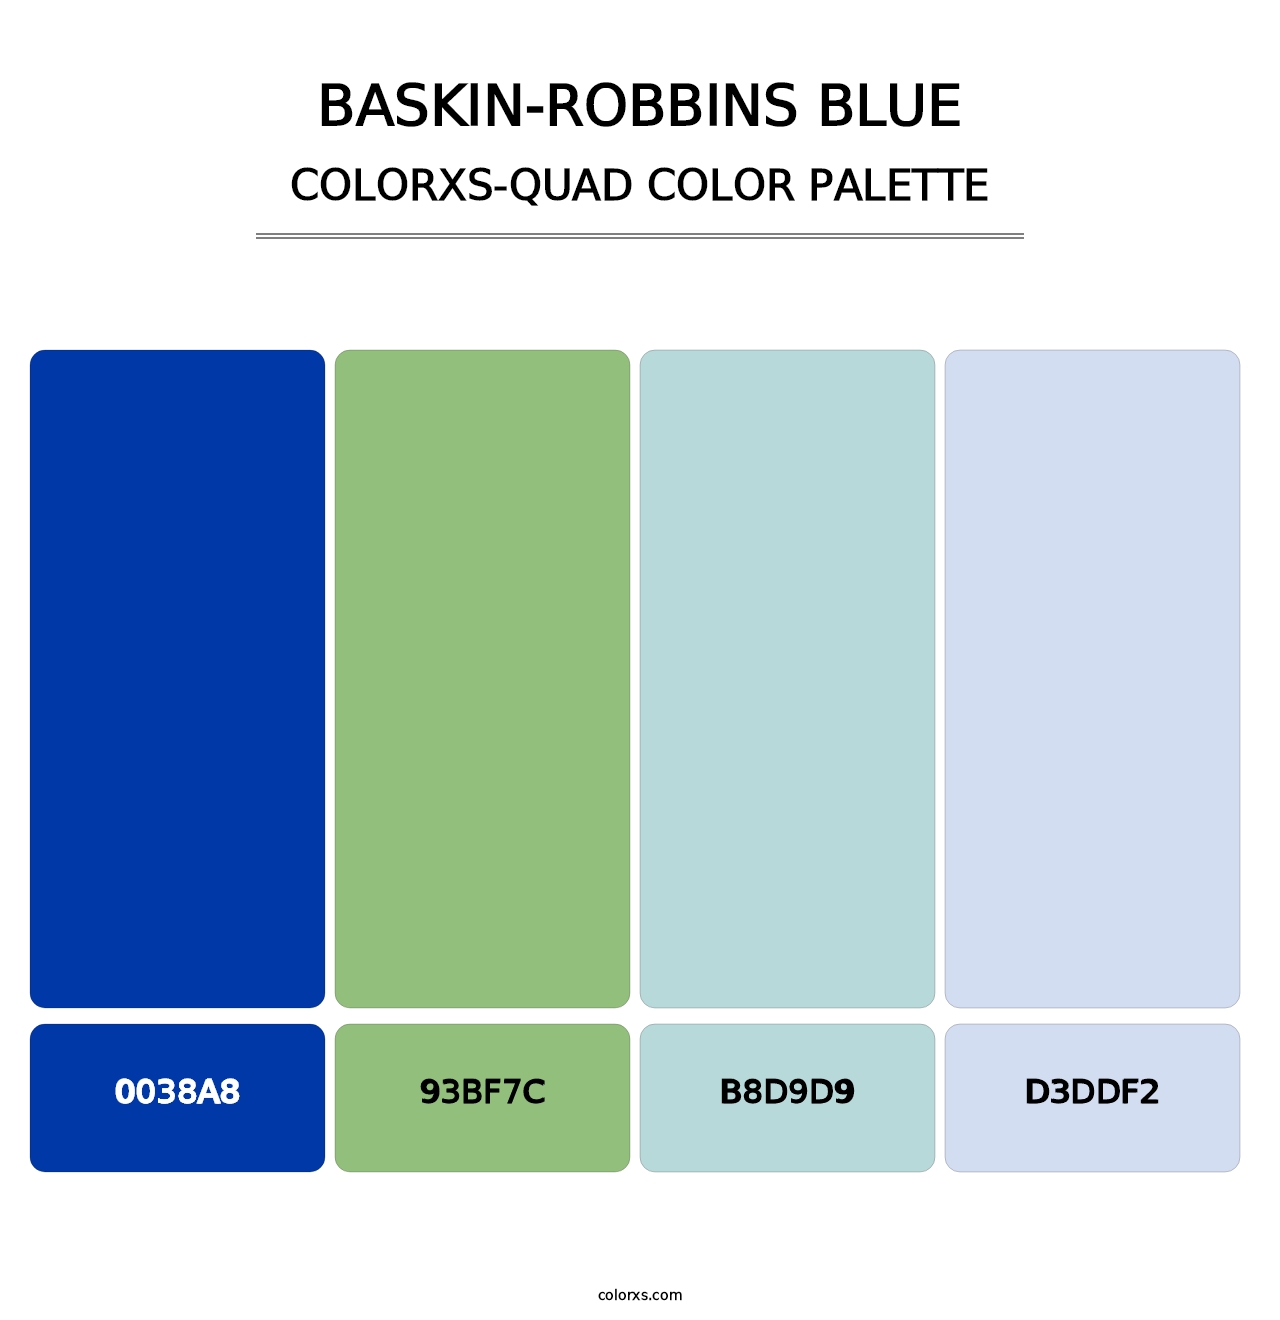 Baskin-Robbins Blue - Colorxs Quad Palette